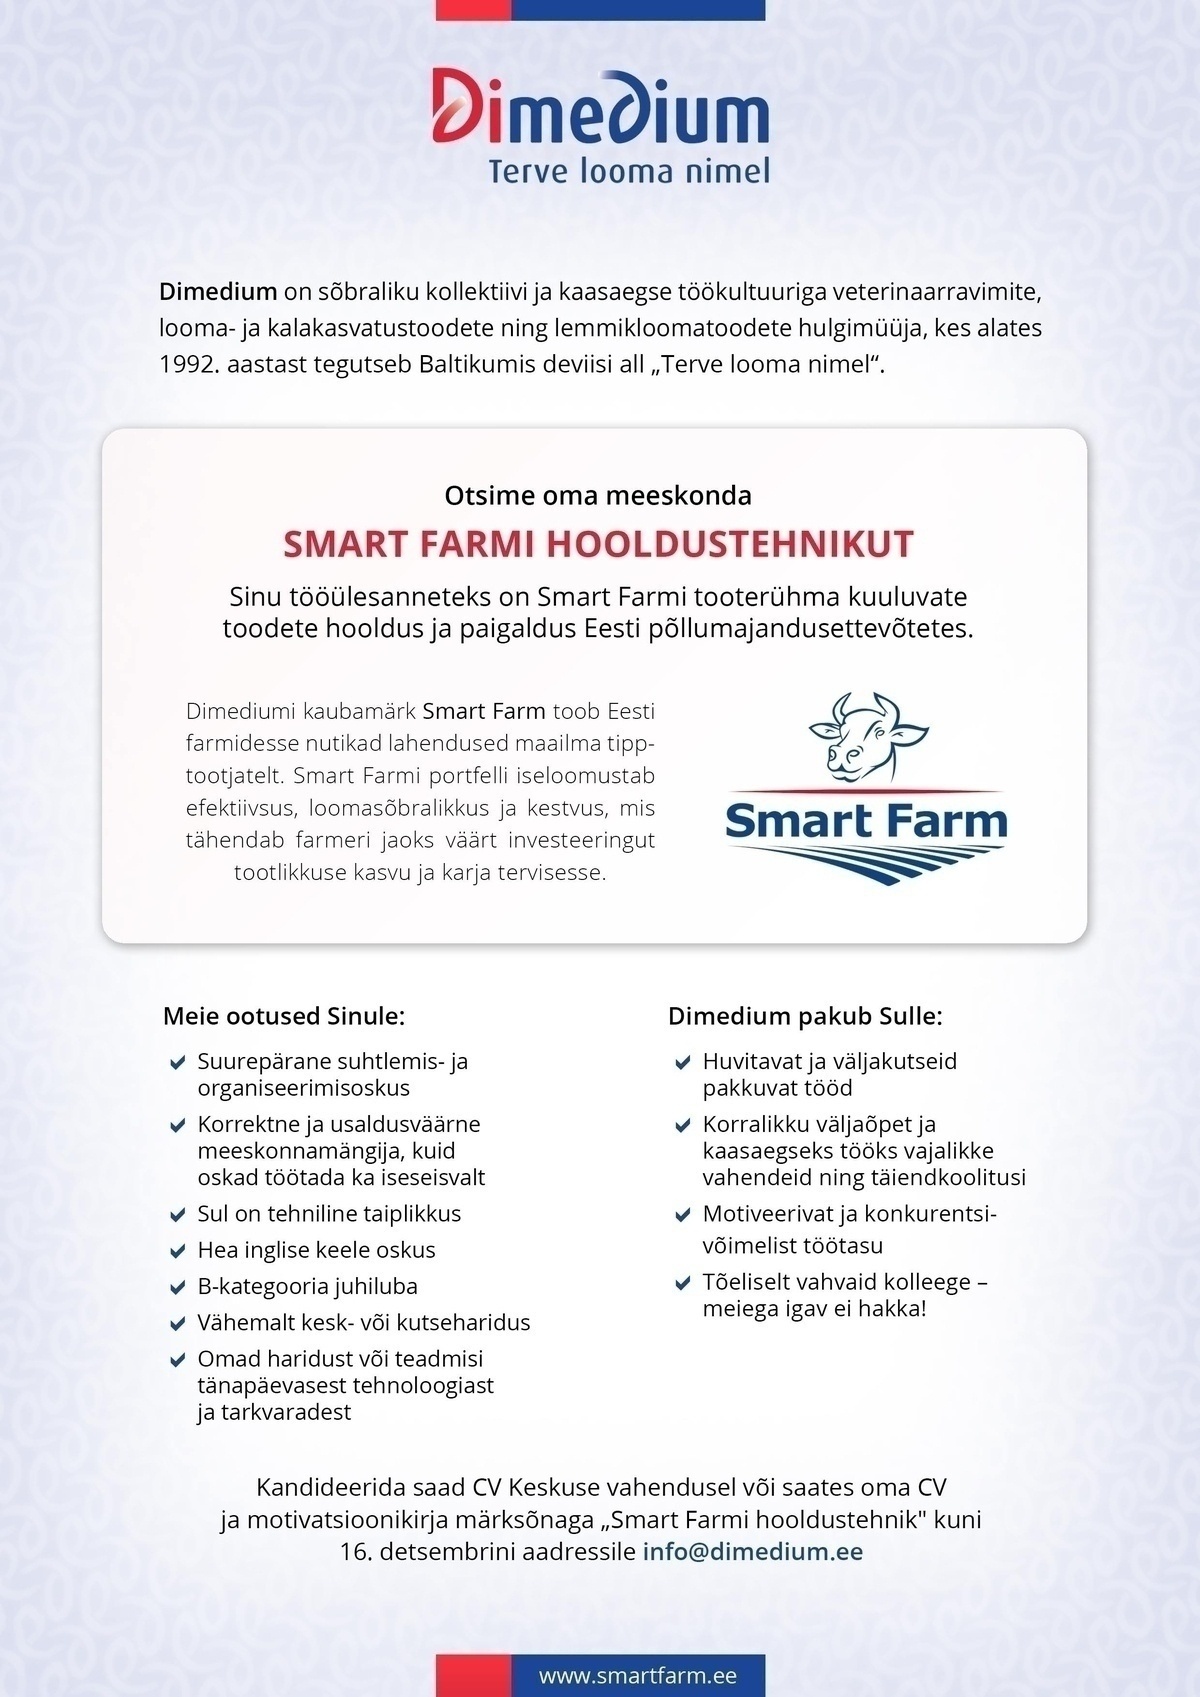 Dimedium AS Smart Farmi hooldustehnik